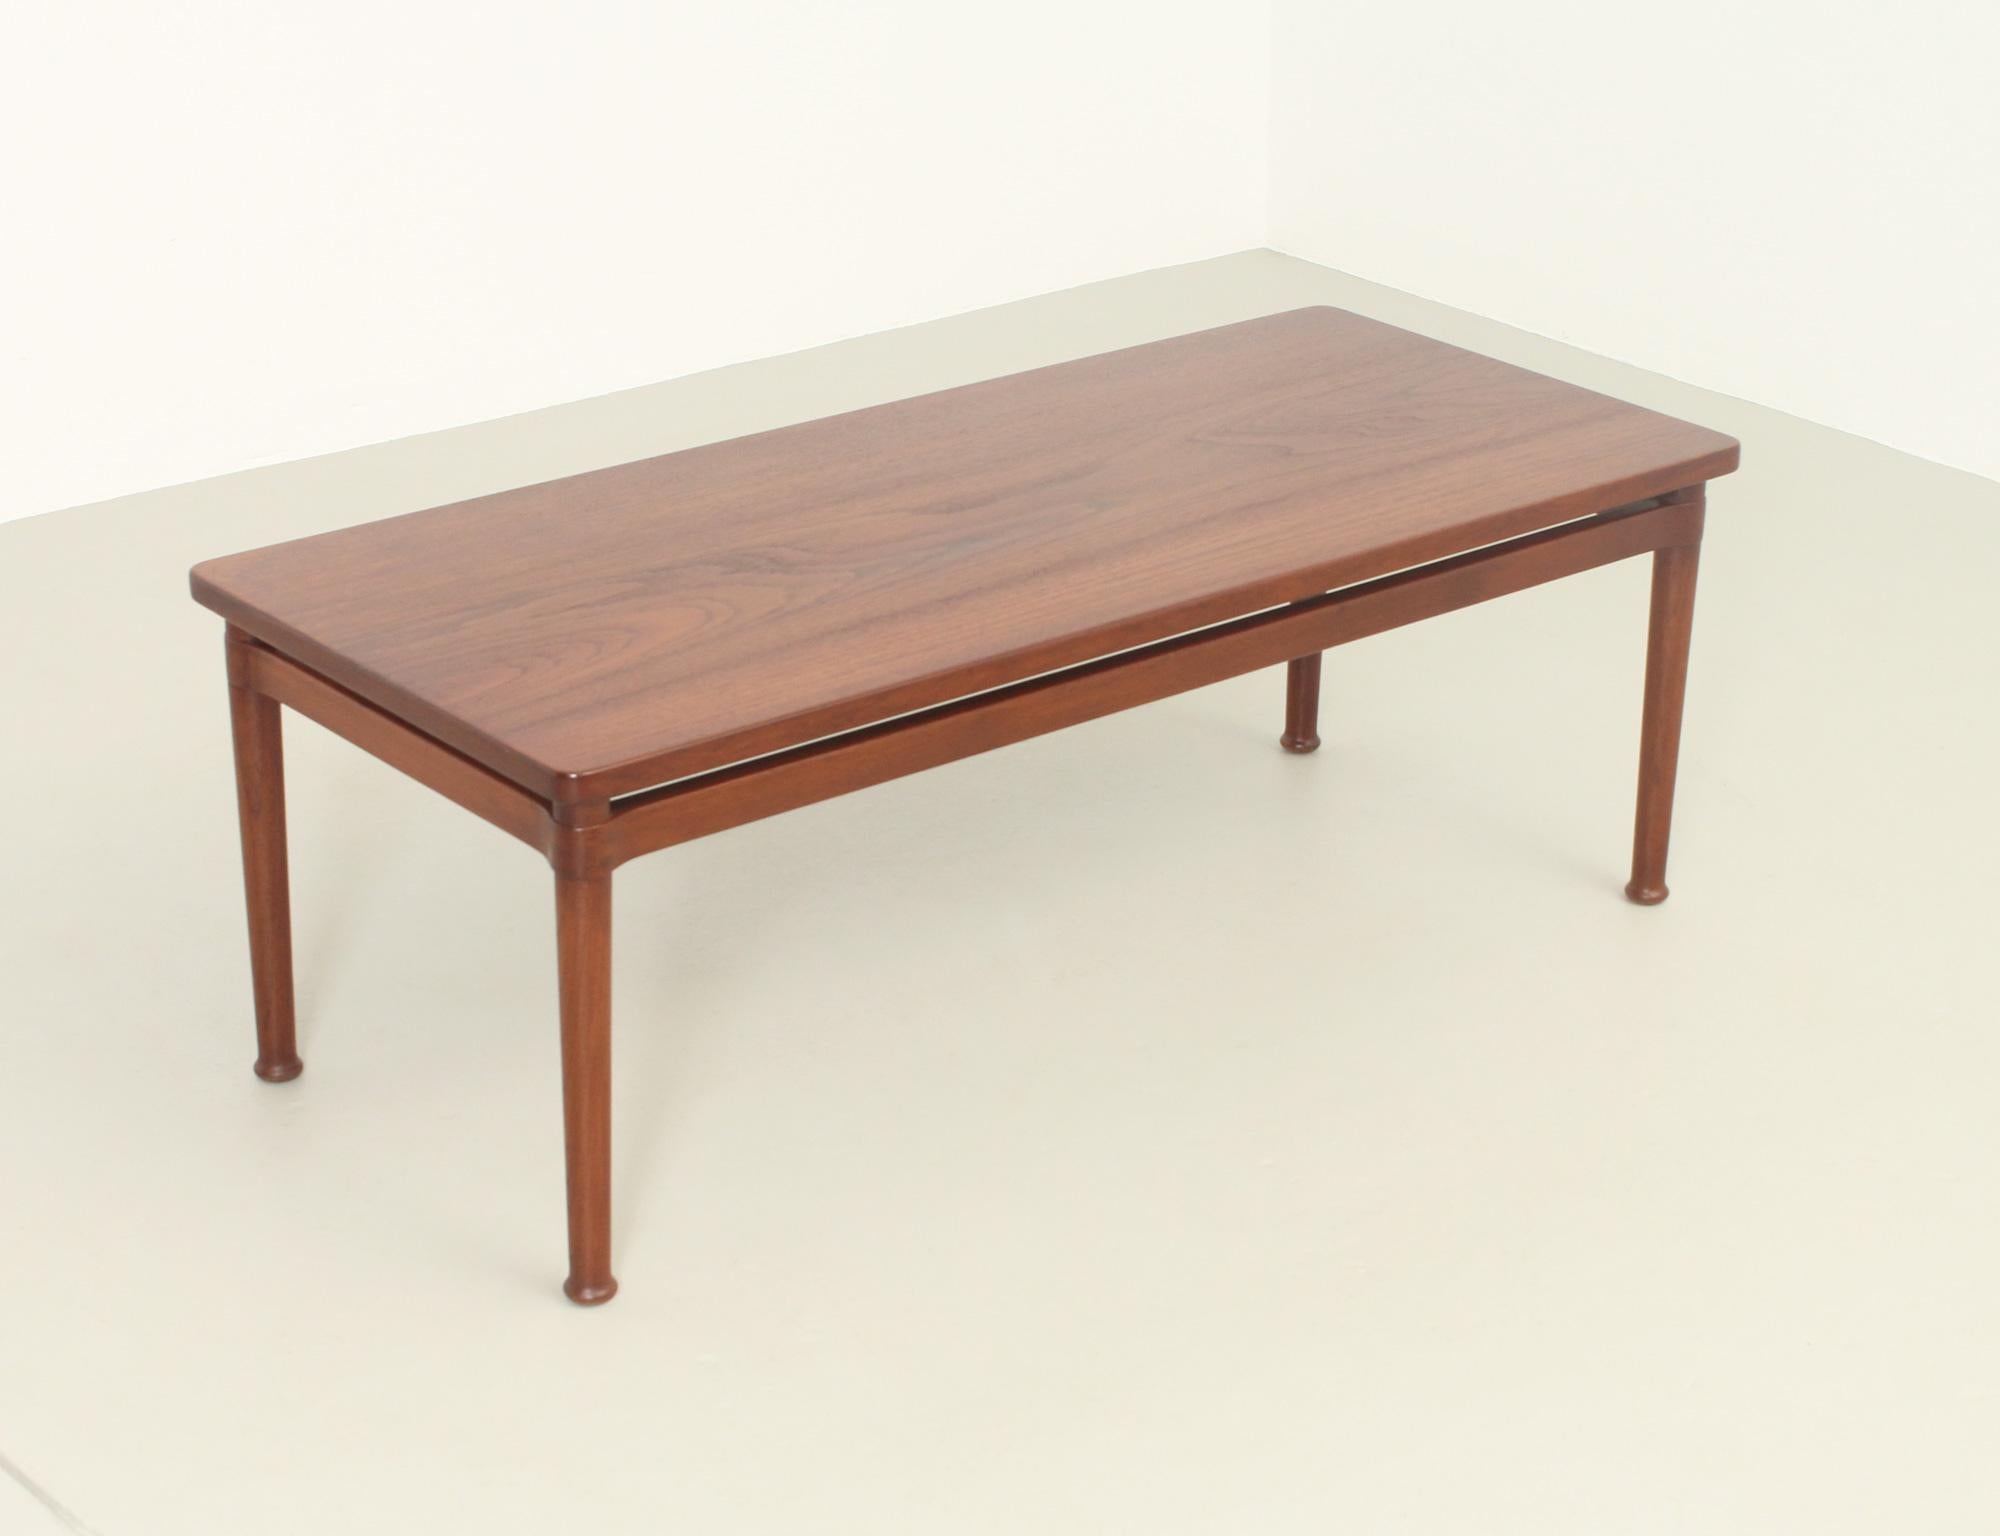 Rectangular coffee table designed in 1950's by Kai Lyngfeldt Larsen for Søborg Møbler, Denmark. Very rare model in massive teak wood with nice details in the joints.